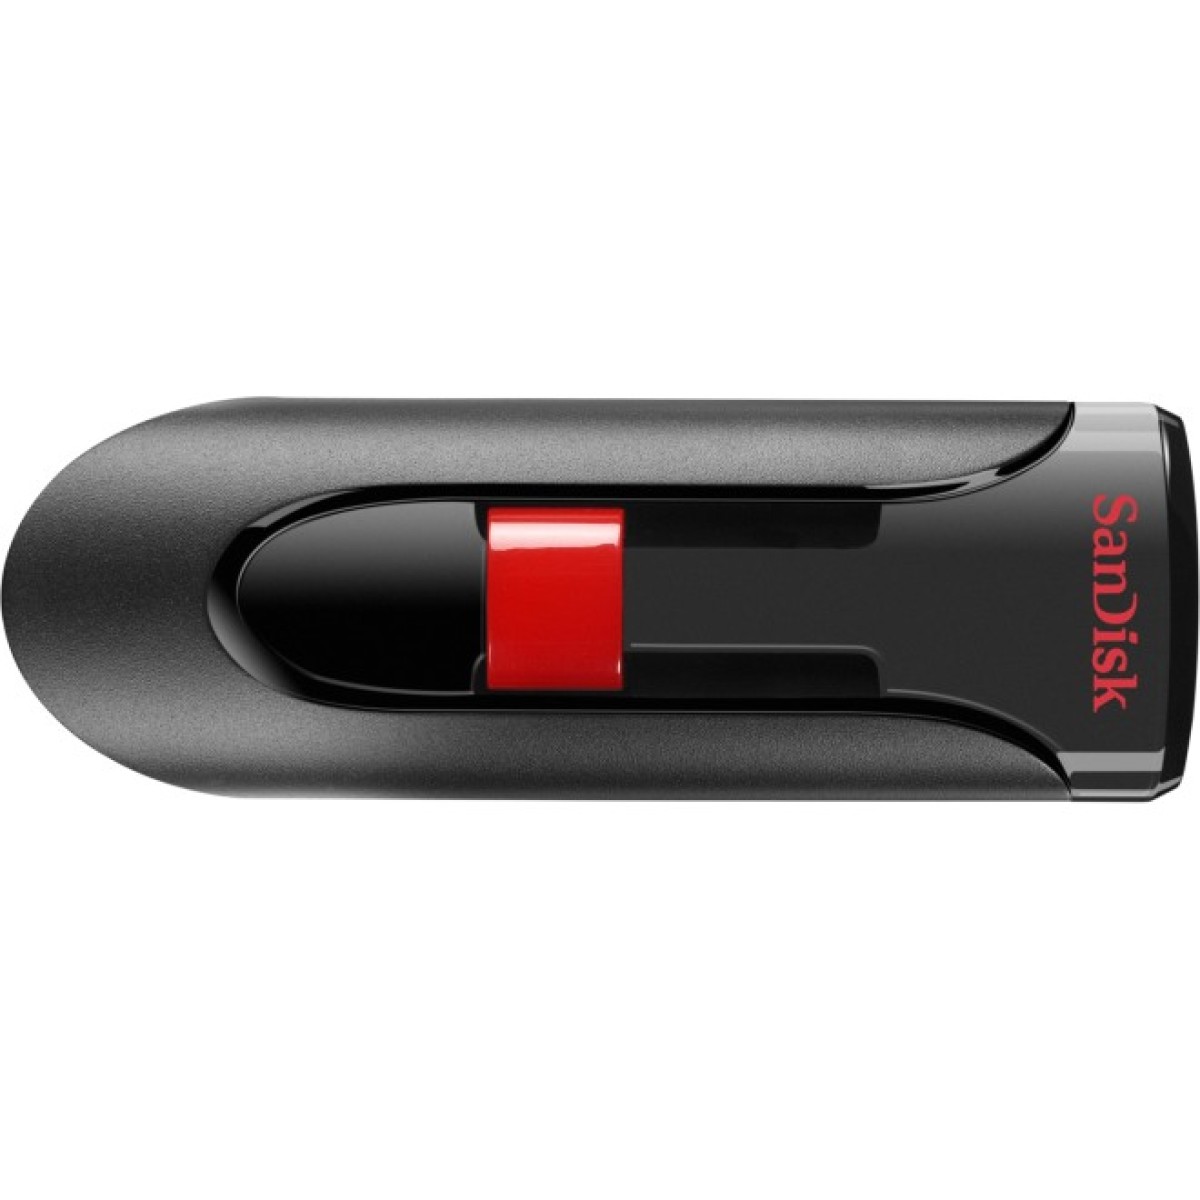 USB флеш накопитель SanDisk 64GB Cruzer Glide Black USB 3.0 (SDCZ600-064G-G35) 256_256.jpg